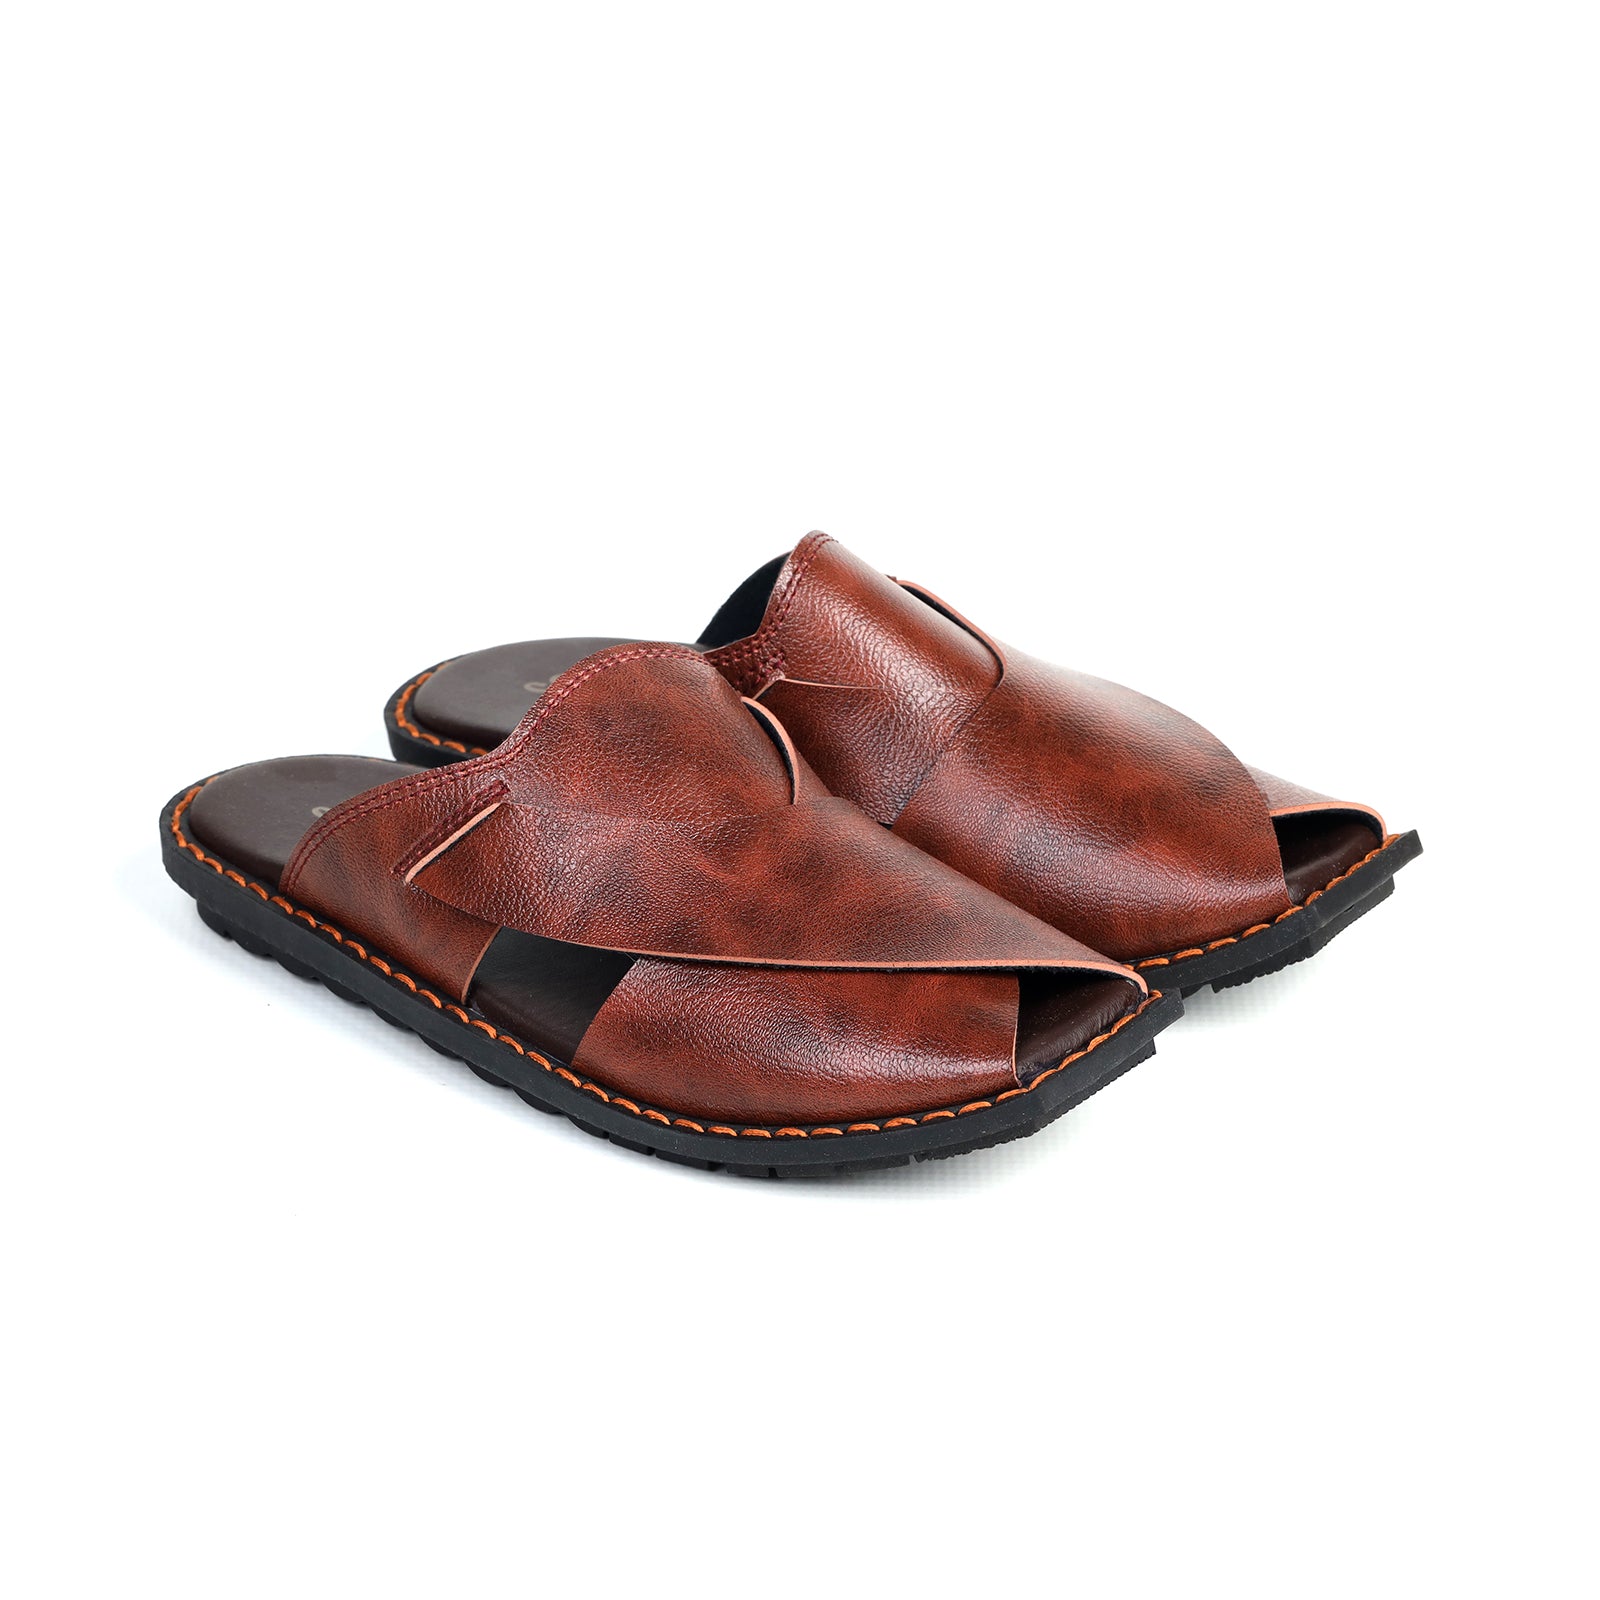 Bonicci Peshawari Sandals for Men - 9145 Tan Leather�